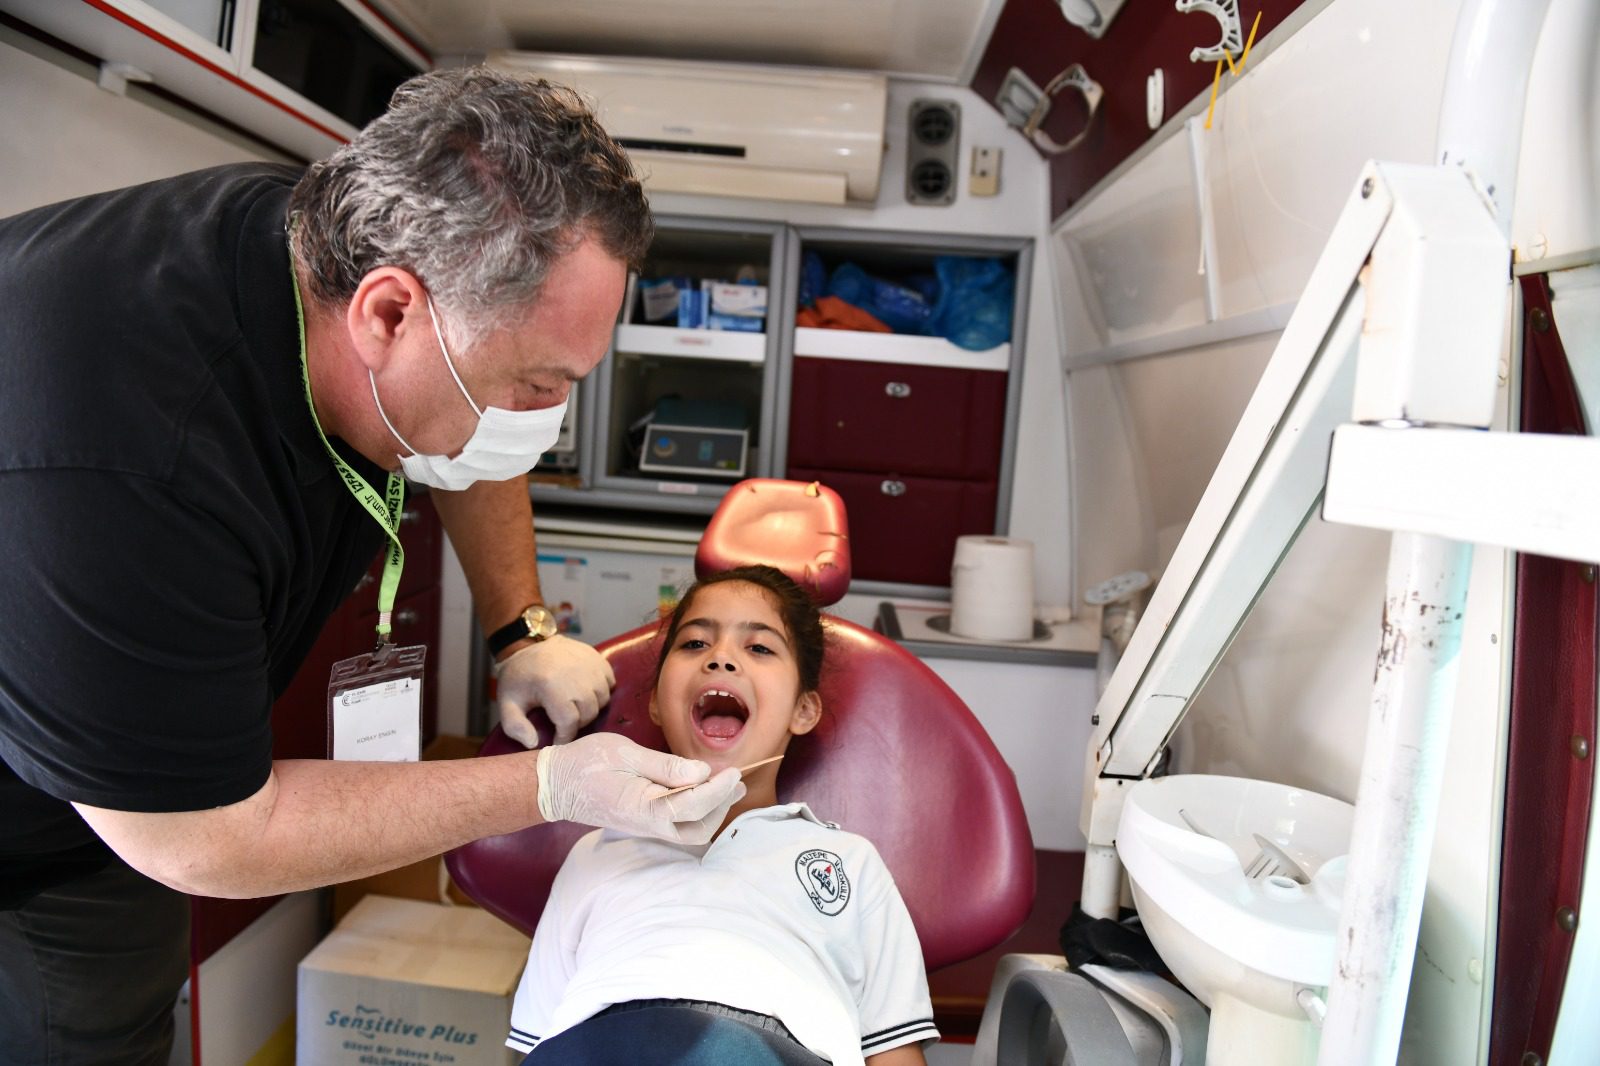 çiğli belediyesi Çiğli Belediyesi ile İzmir Büyükşehir Belediyesi iş birliğinde toplum sağlığını korumak amacıyla başlatılan Önleyici Sağlık Hizmetleri çalışmaları hız kesmeden devam ediyor. Kasım ayında 1000 çocuğun ağız ve diş sağlığı taraması yapıldı.